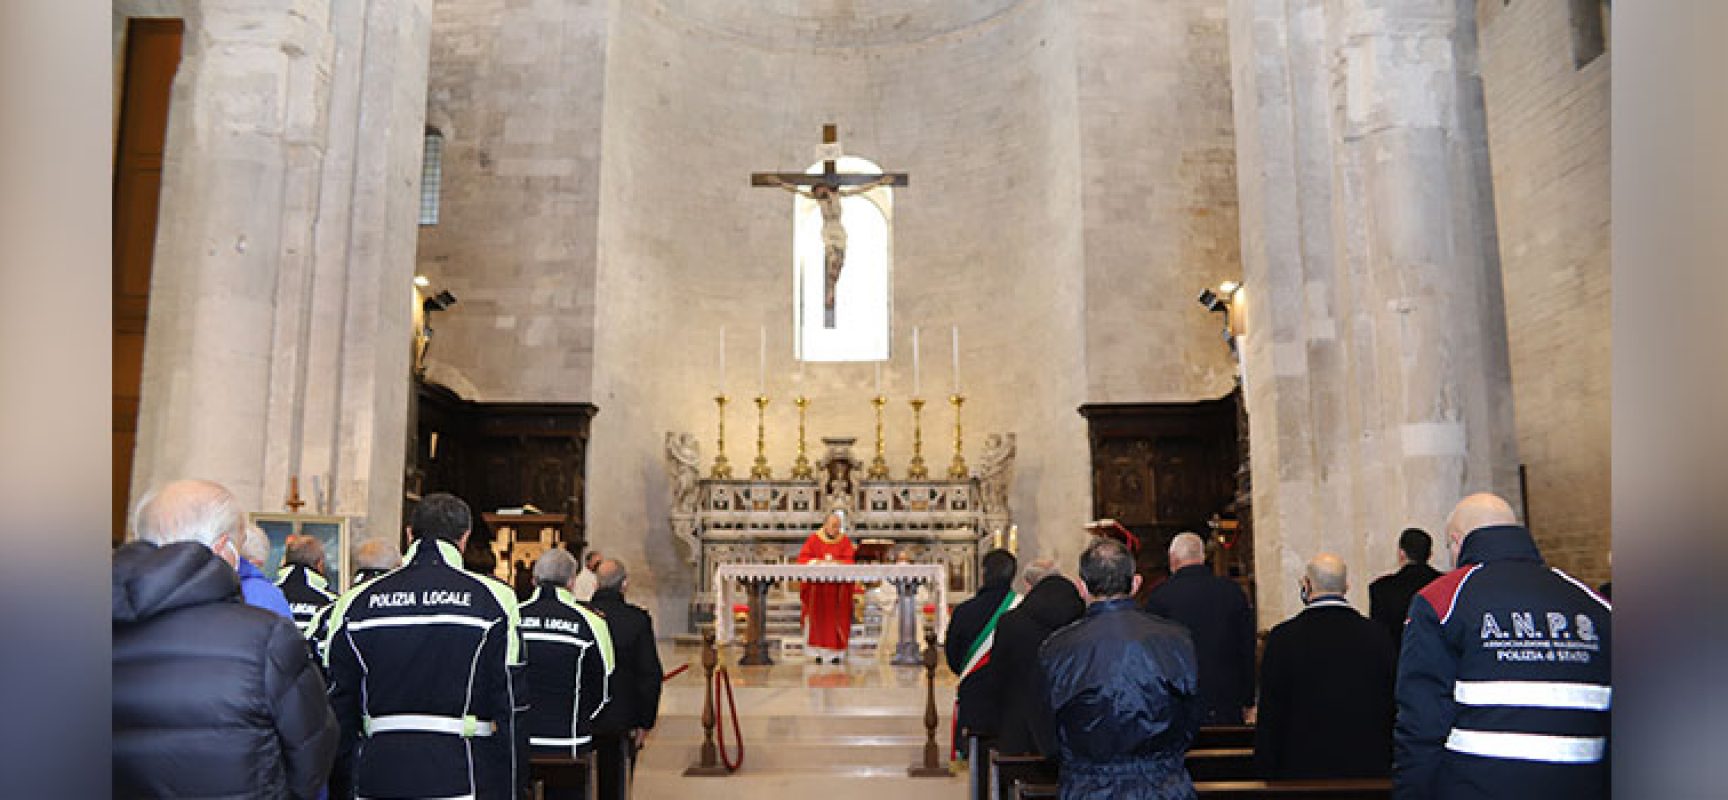 La Polizia Locale onora il suo Santo Patrono, San Sebastiano martire